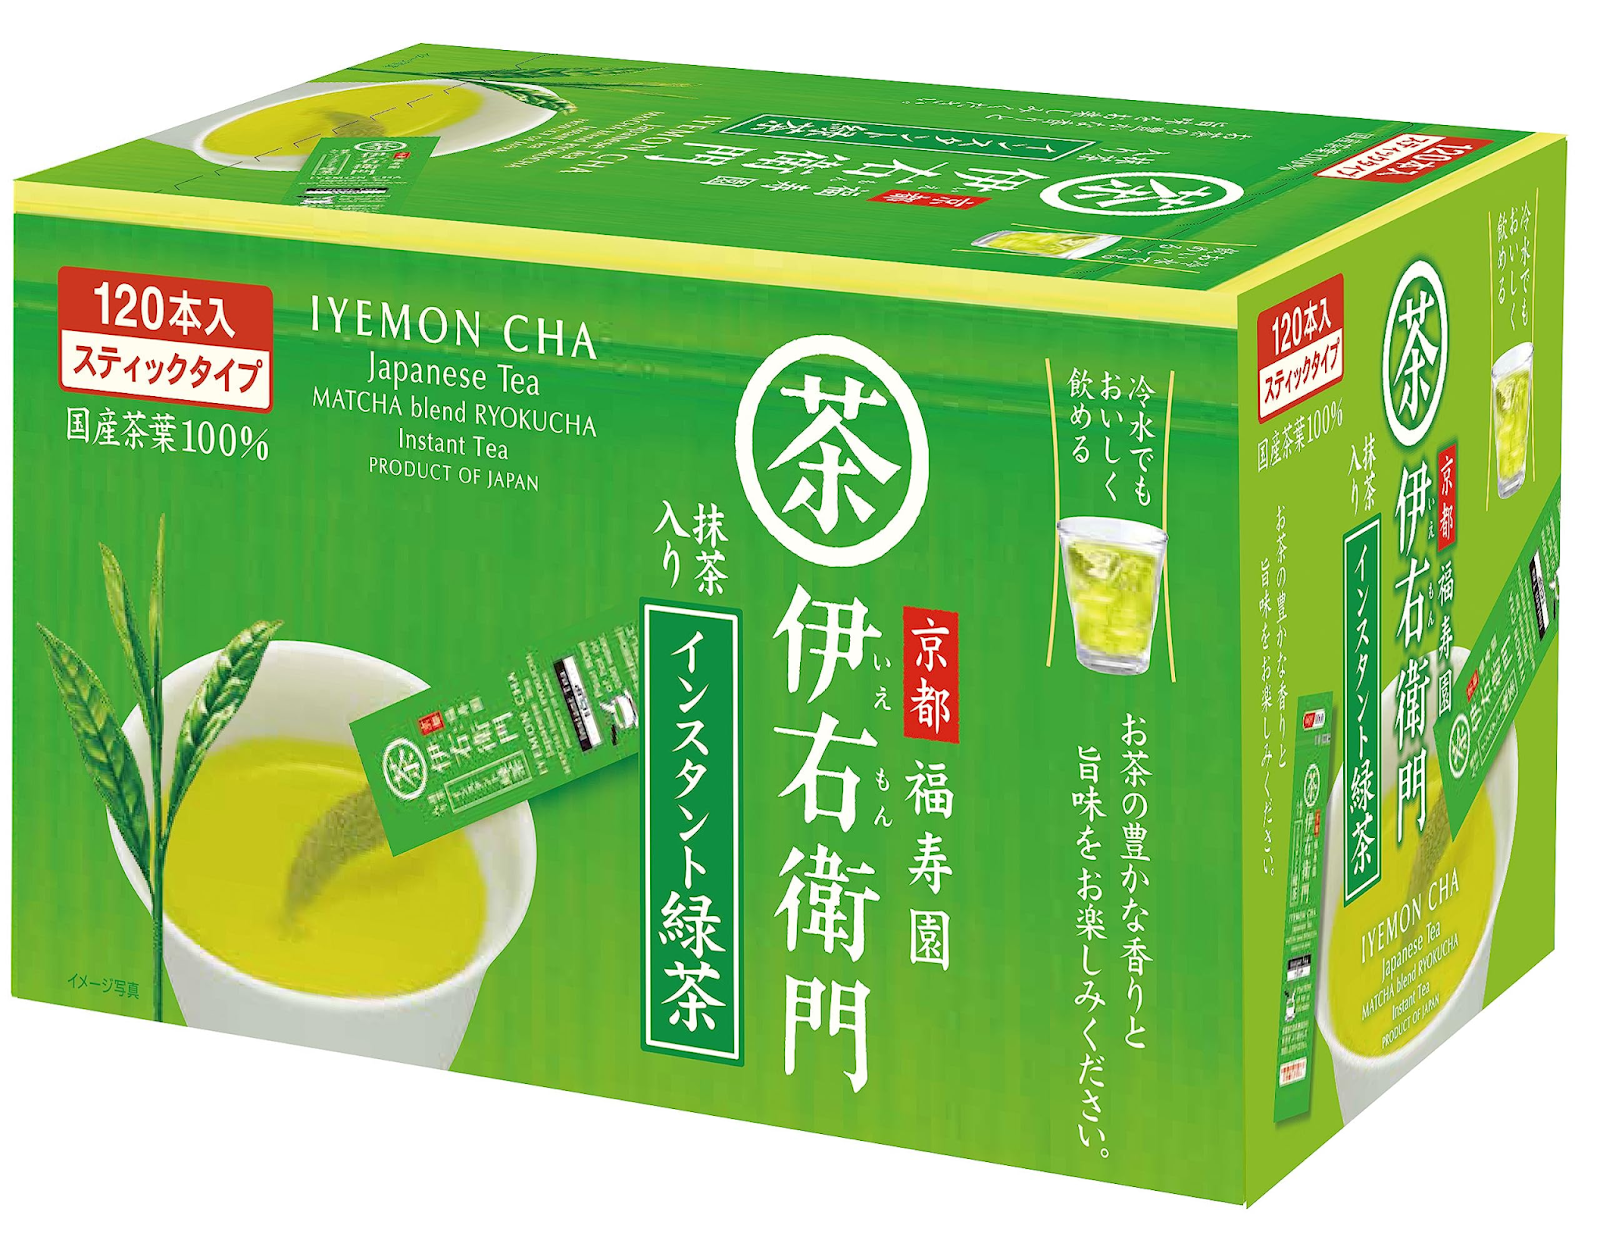 Best Green Tea in Malaysia